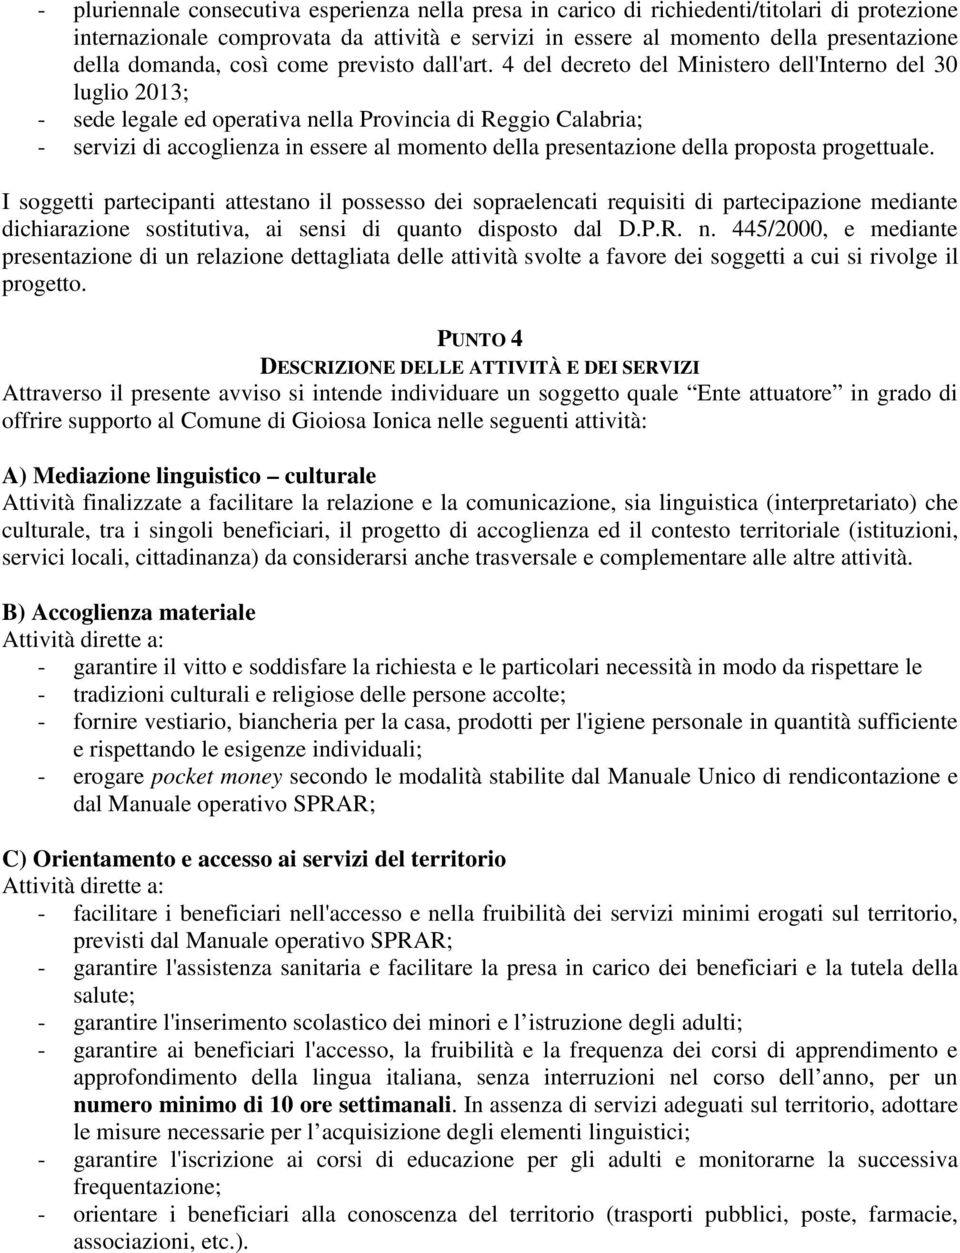 4 del decreto del Ministero dell'interno del 30 luglio 2013; - sede legale ed operativa nella Provincia di Reggio Calabria; - servizi di accoglienza in essere al momento della presentazione della